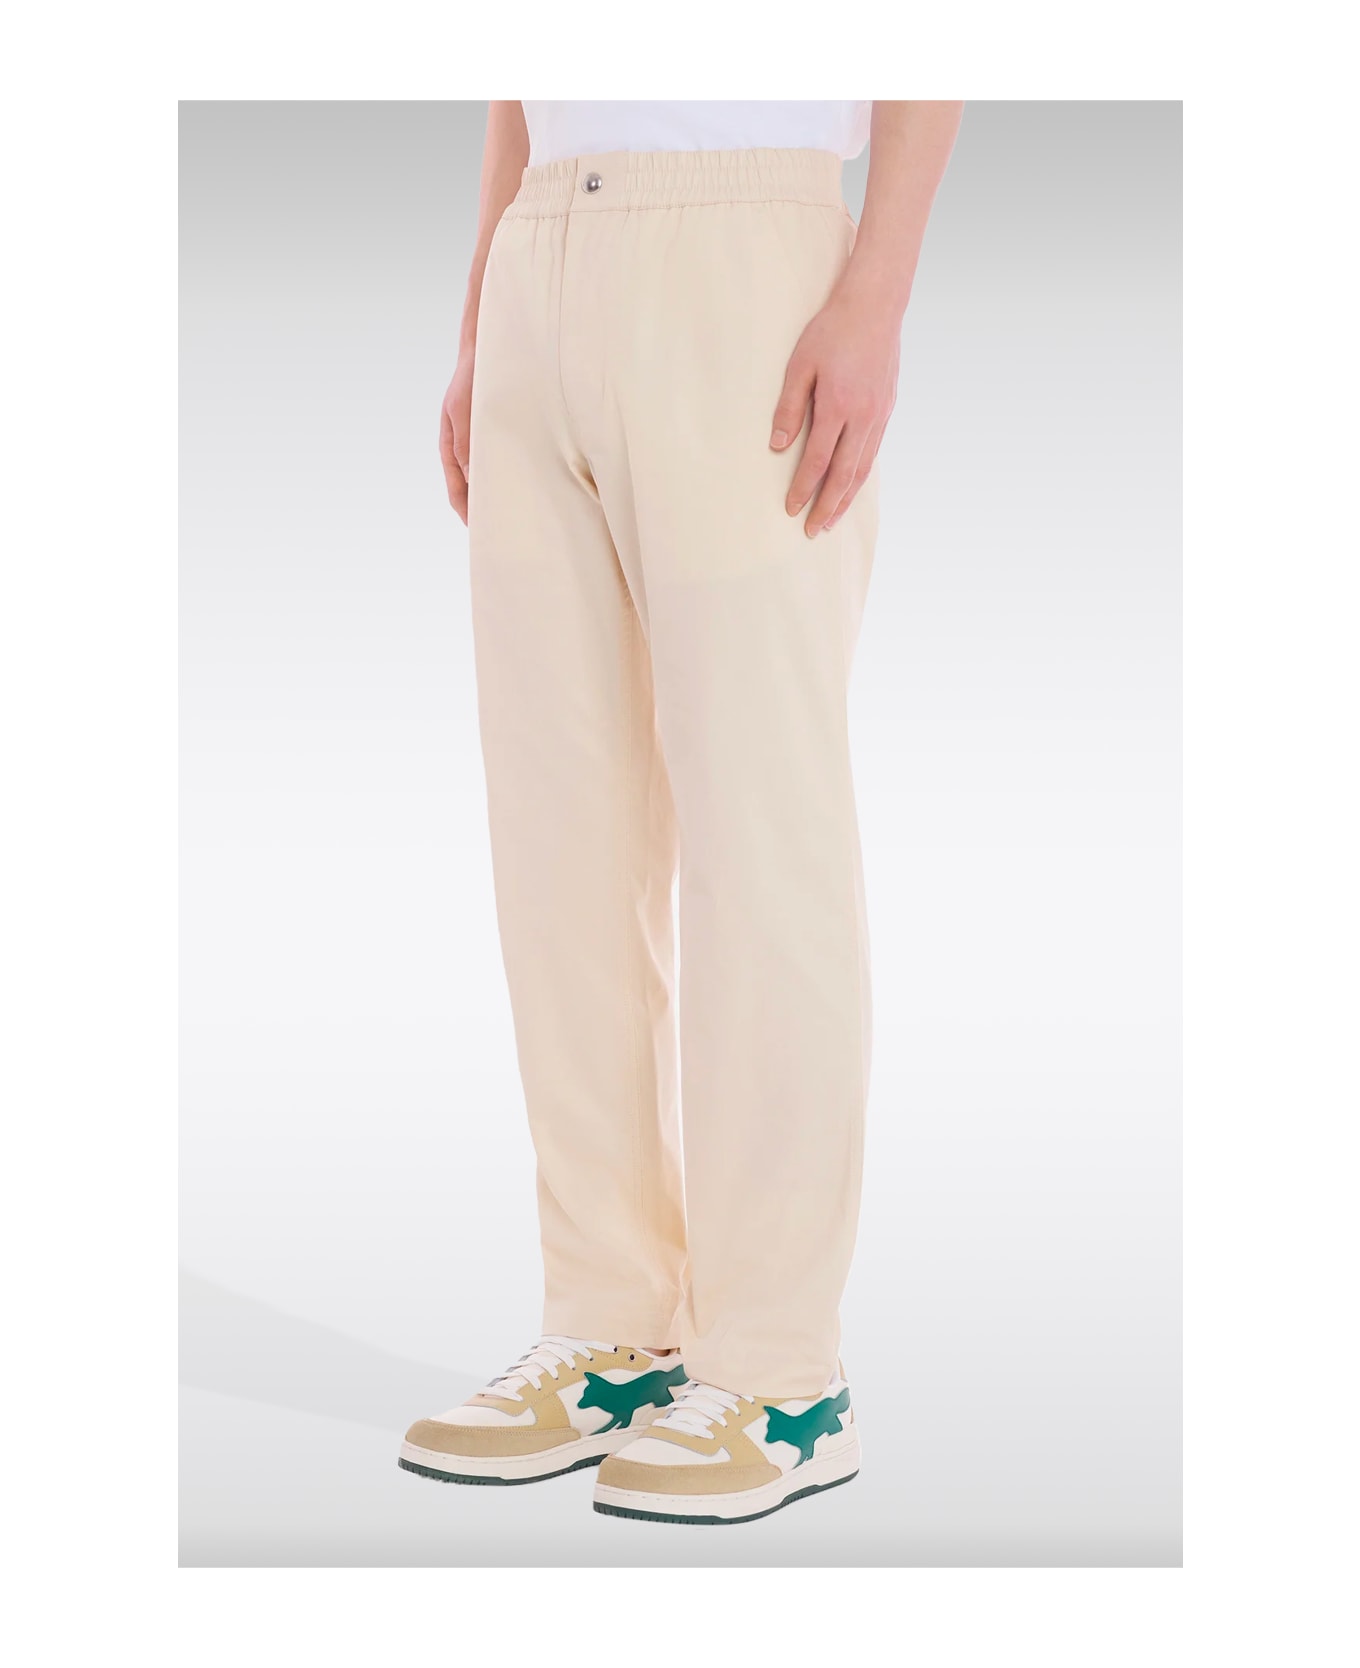 Maison Kitsuné Casual Pants Light beige cotton pants with elastic waistband - Casual Pants - Beige